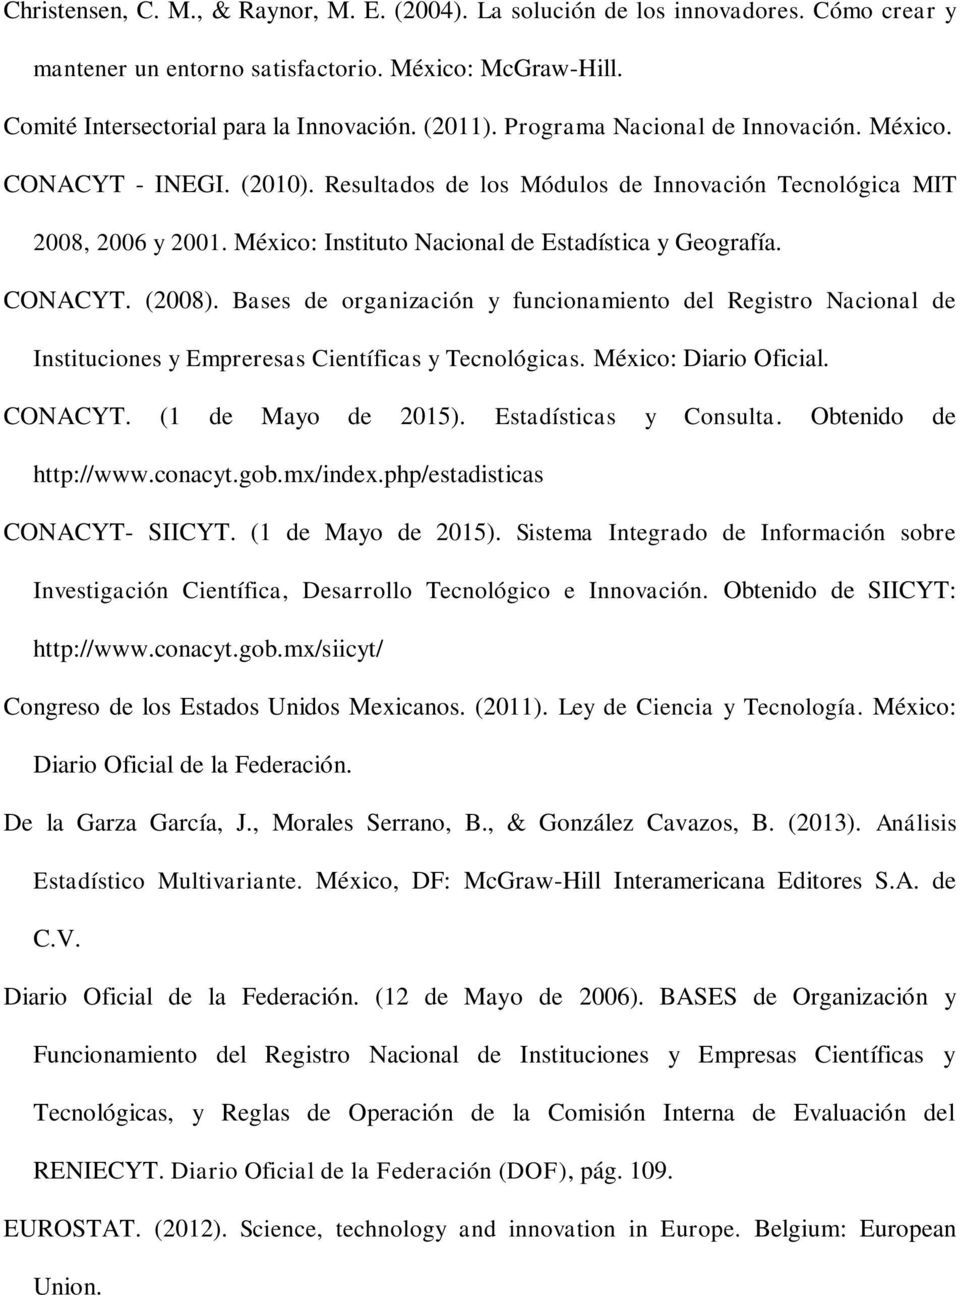 CONACYT. (2008). Bases de organización y funcionamiento del Registro Nacional de Instituciones y Empreresas Científicas y Tecnológicas. México: Diario Oficial. CONACYT. (1 de Mayo de 2015).